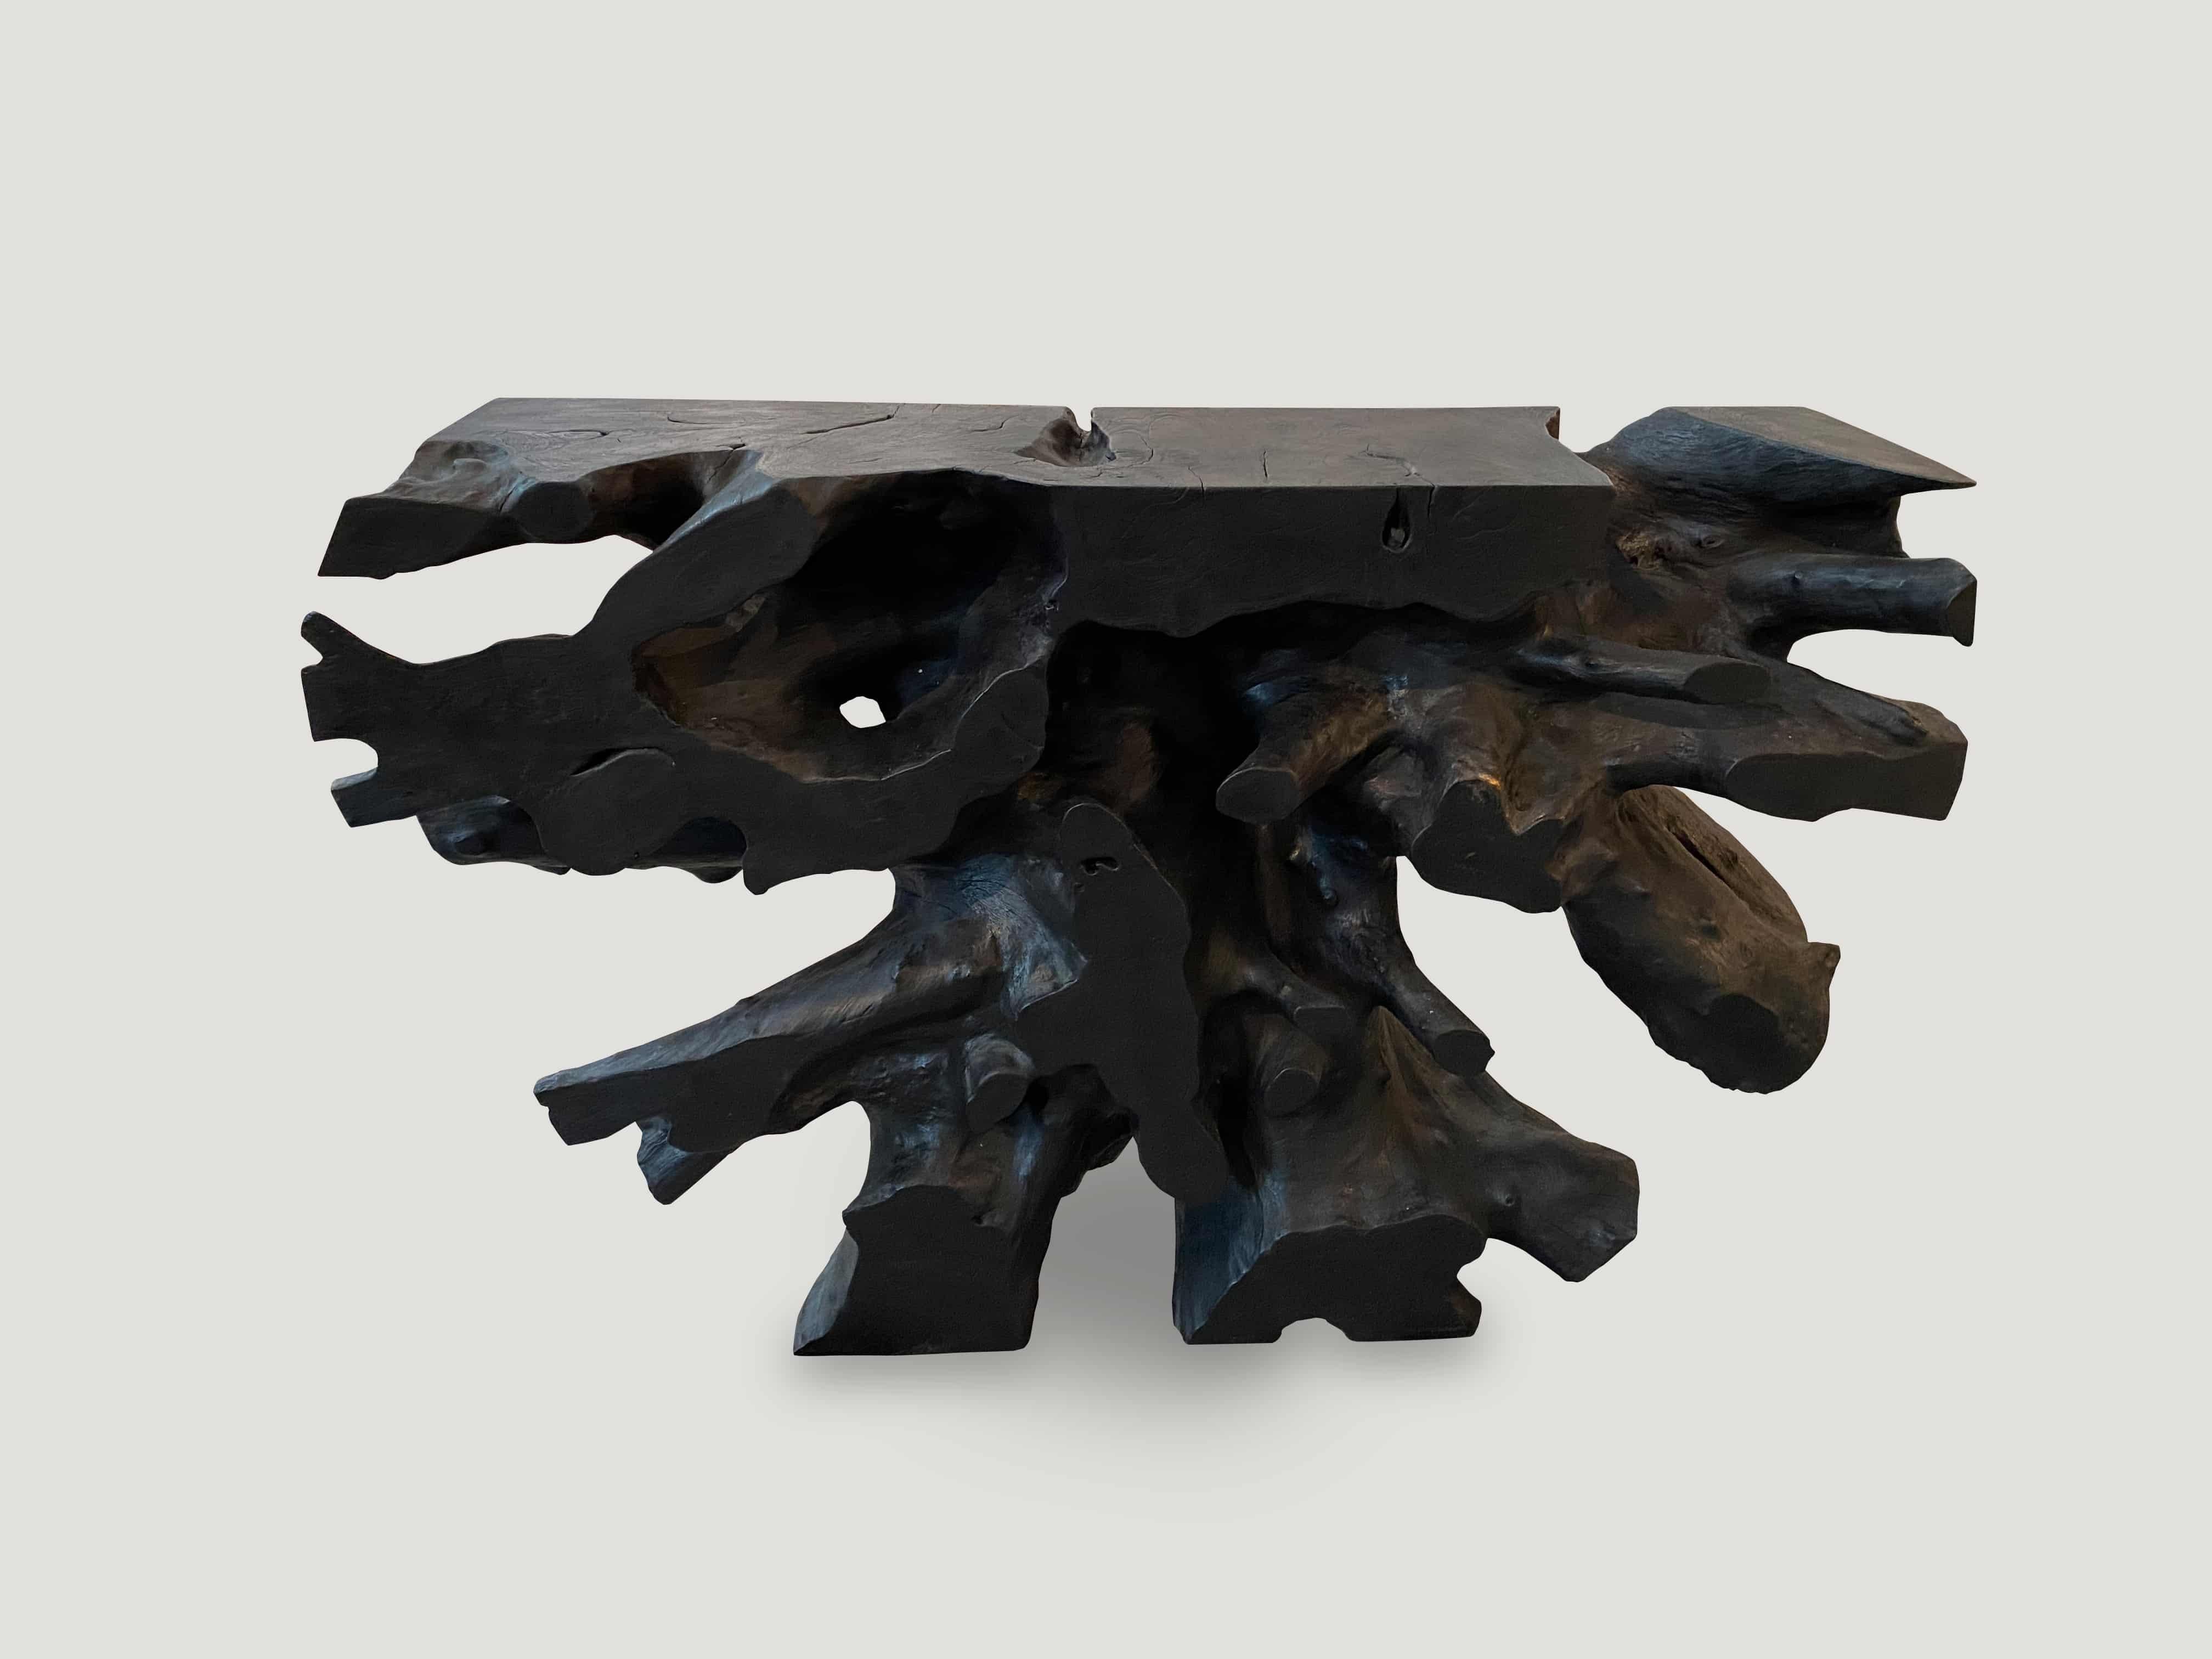 Impressionnante table console en bois de teck recyclé, sculptée à la main à partir d'une seule racine et brûlée pour obtenir cette superbe finition. Fabuleux des deux côtés. Elle peut également être tournée et utilisée comme table basse de 48 x 31 x